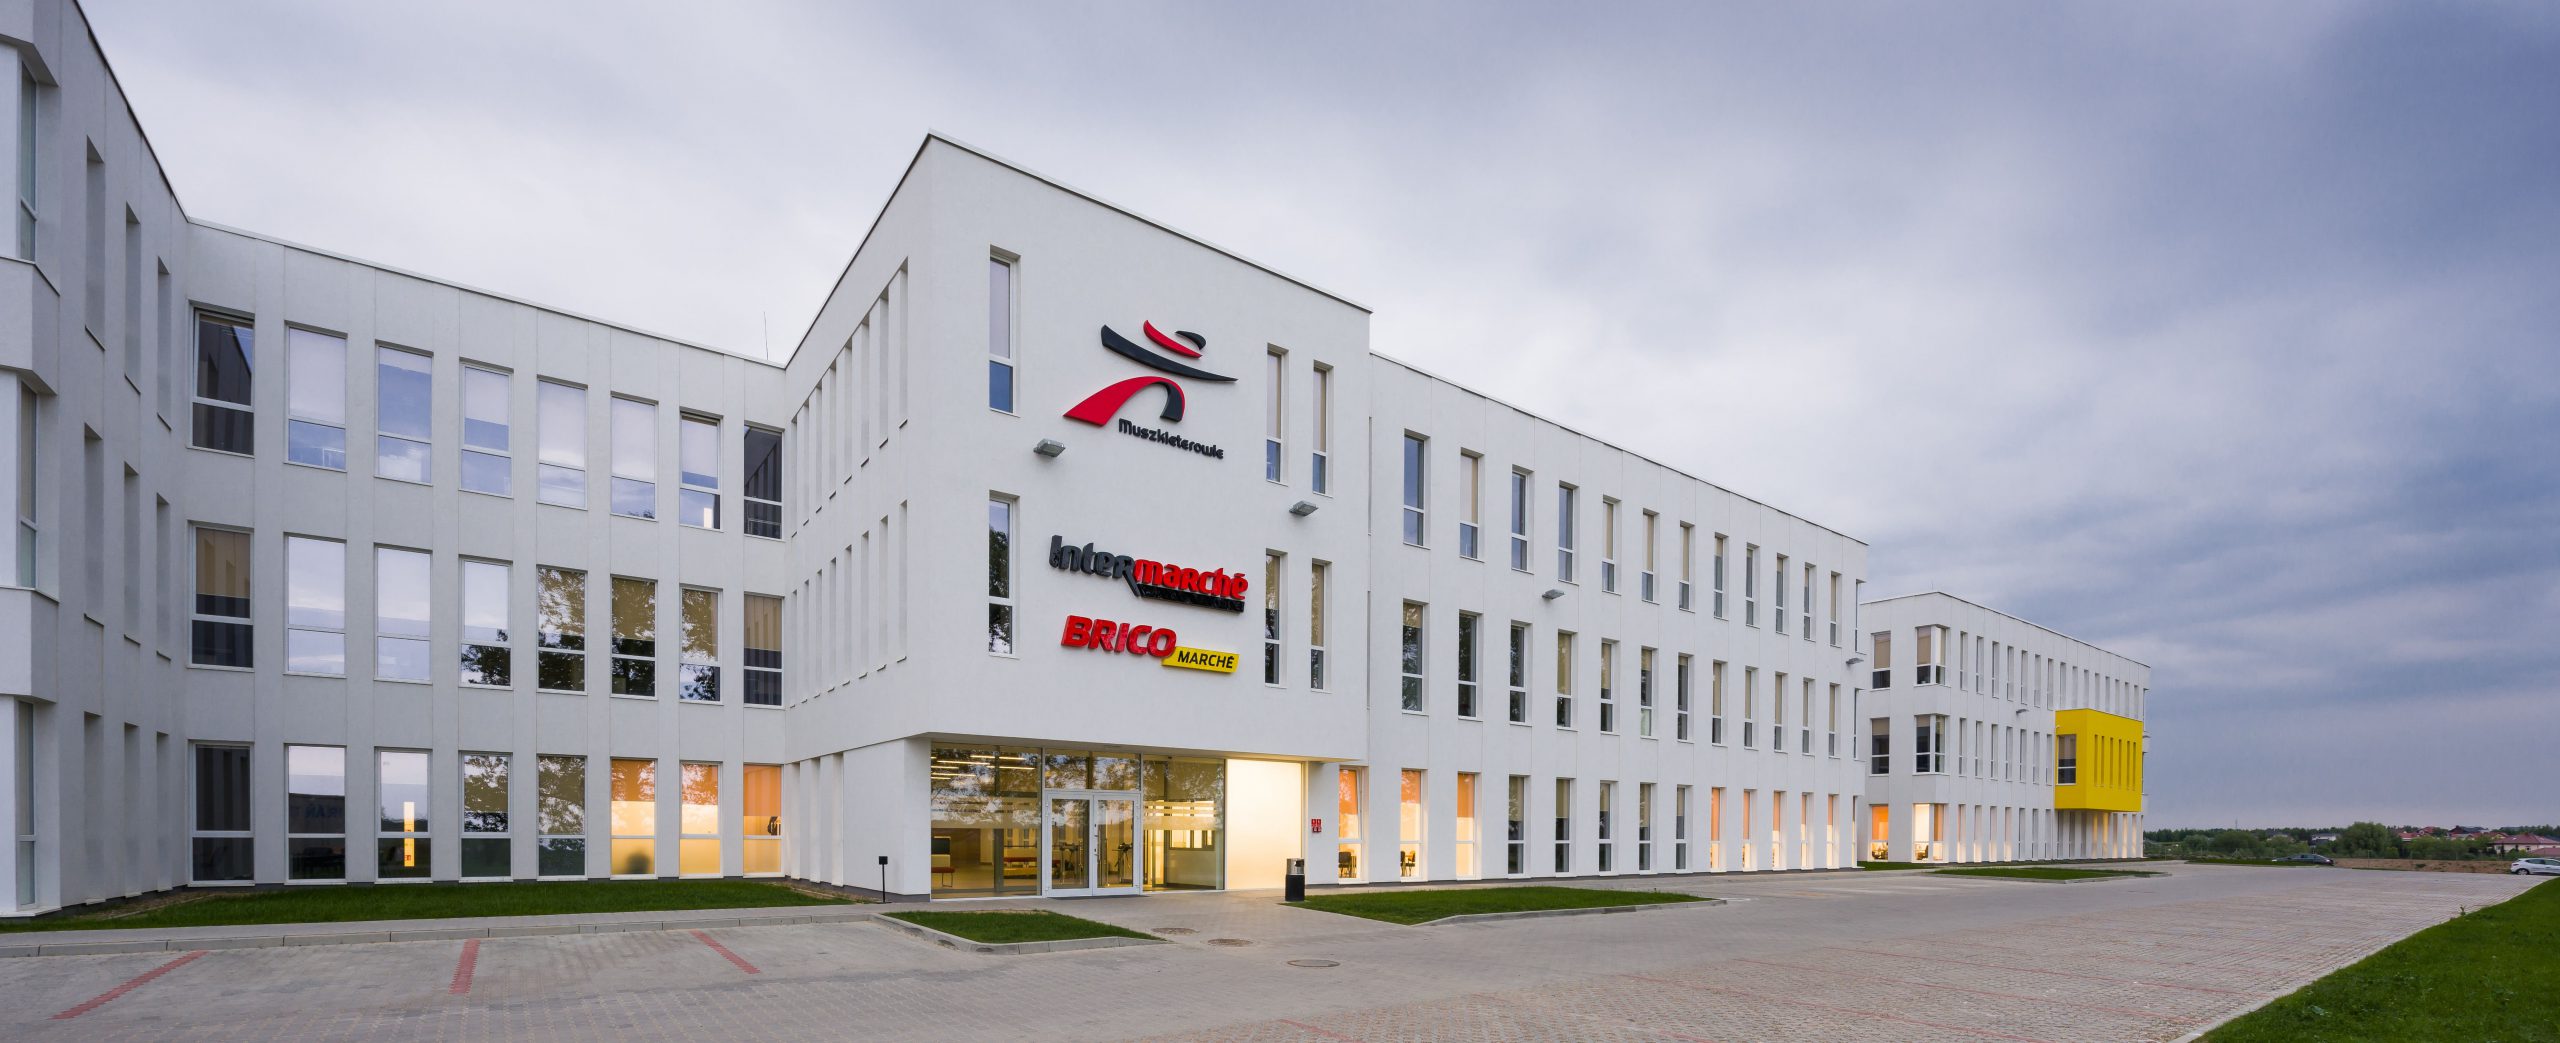 Grupa Muszkieterów jedną z największych firm w polsce